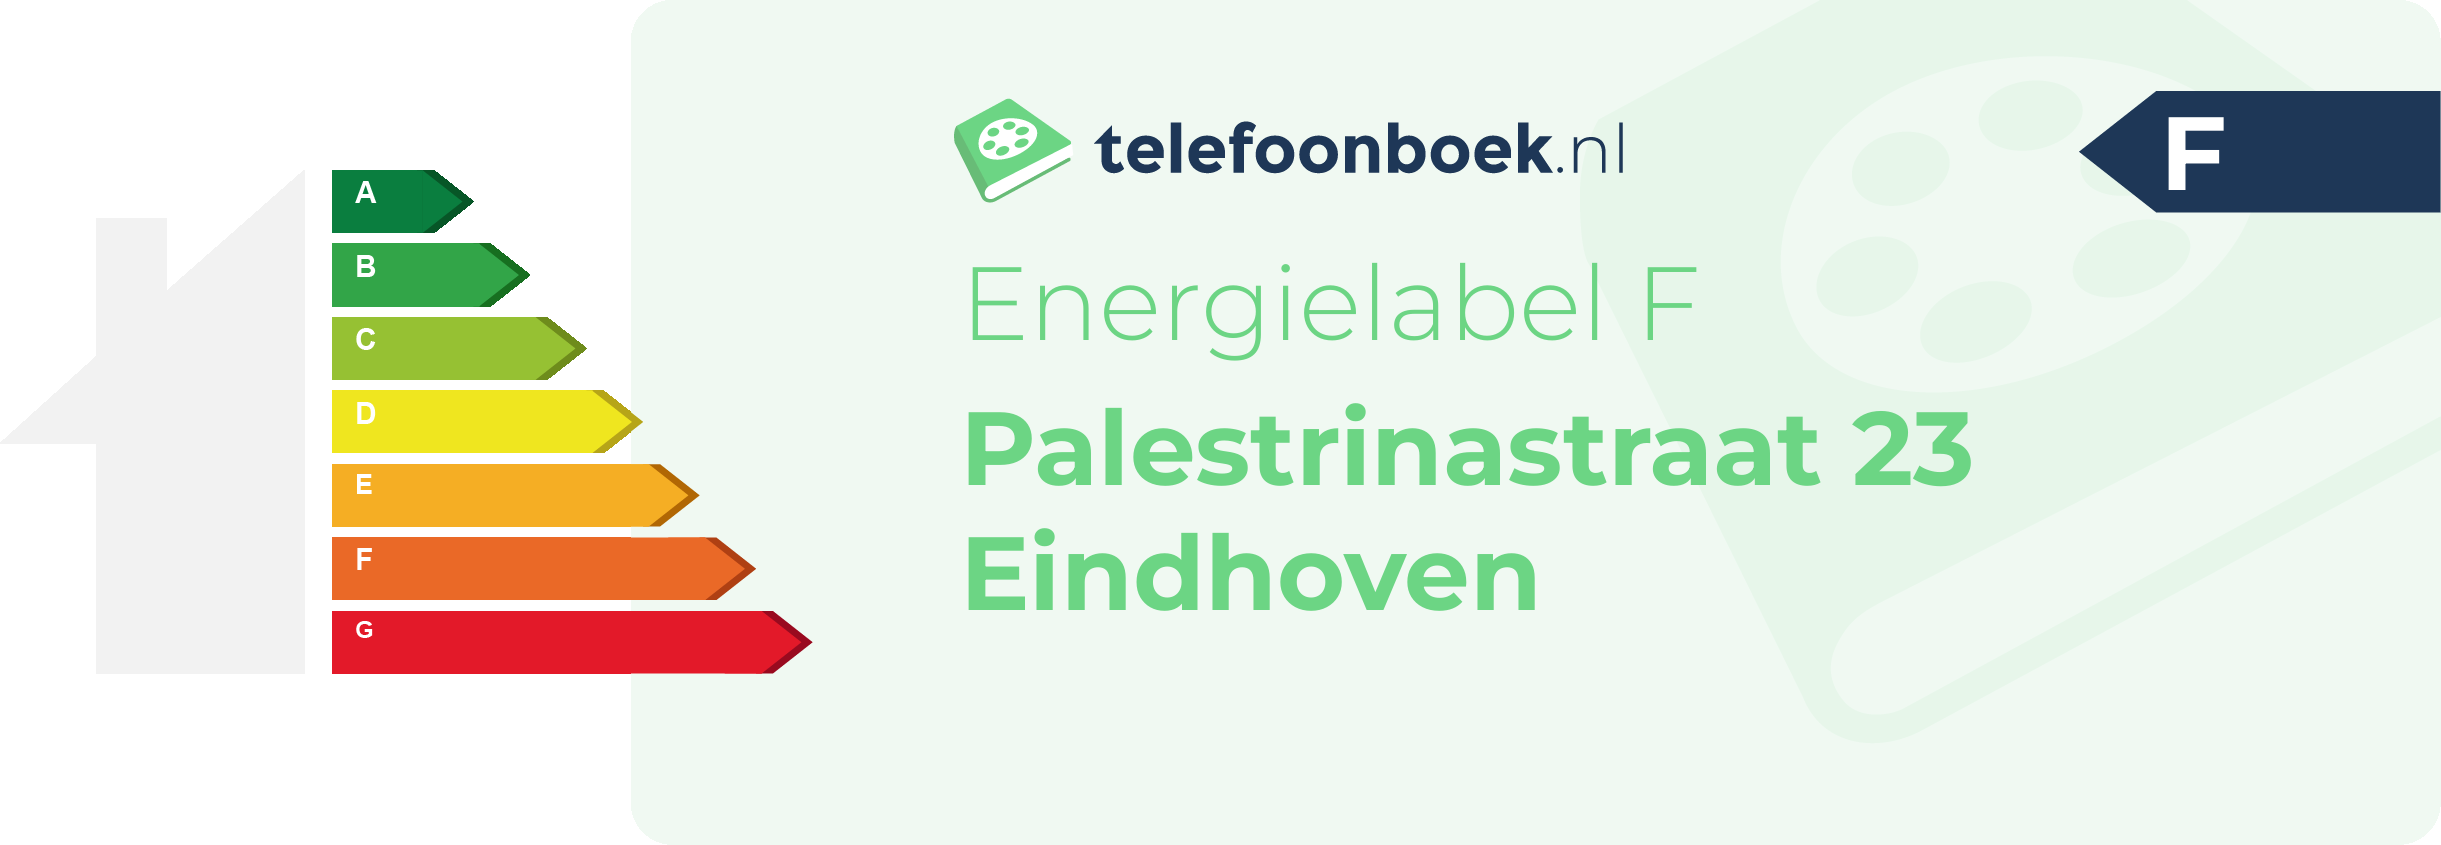 Energielabel Palestrinastraat 23 Eindhoven